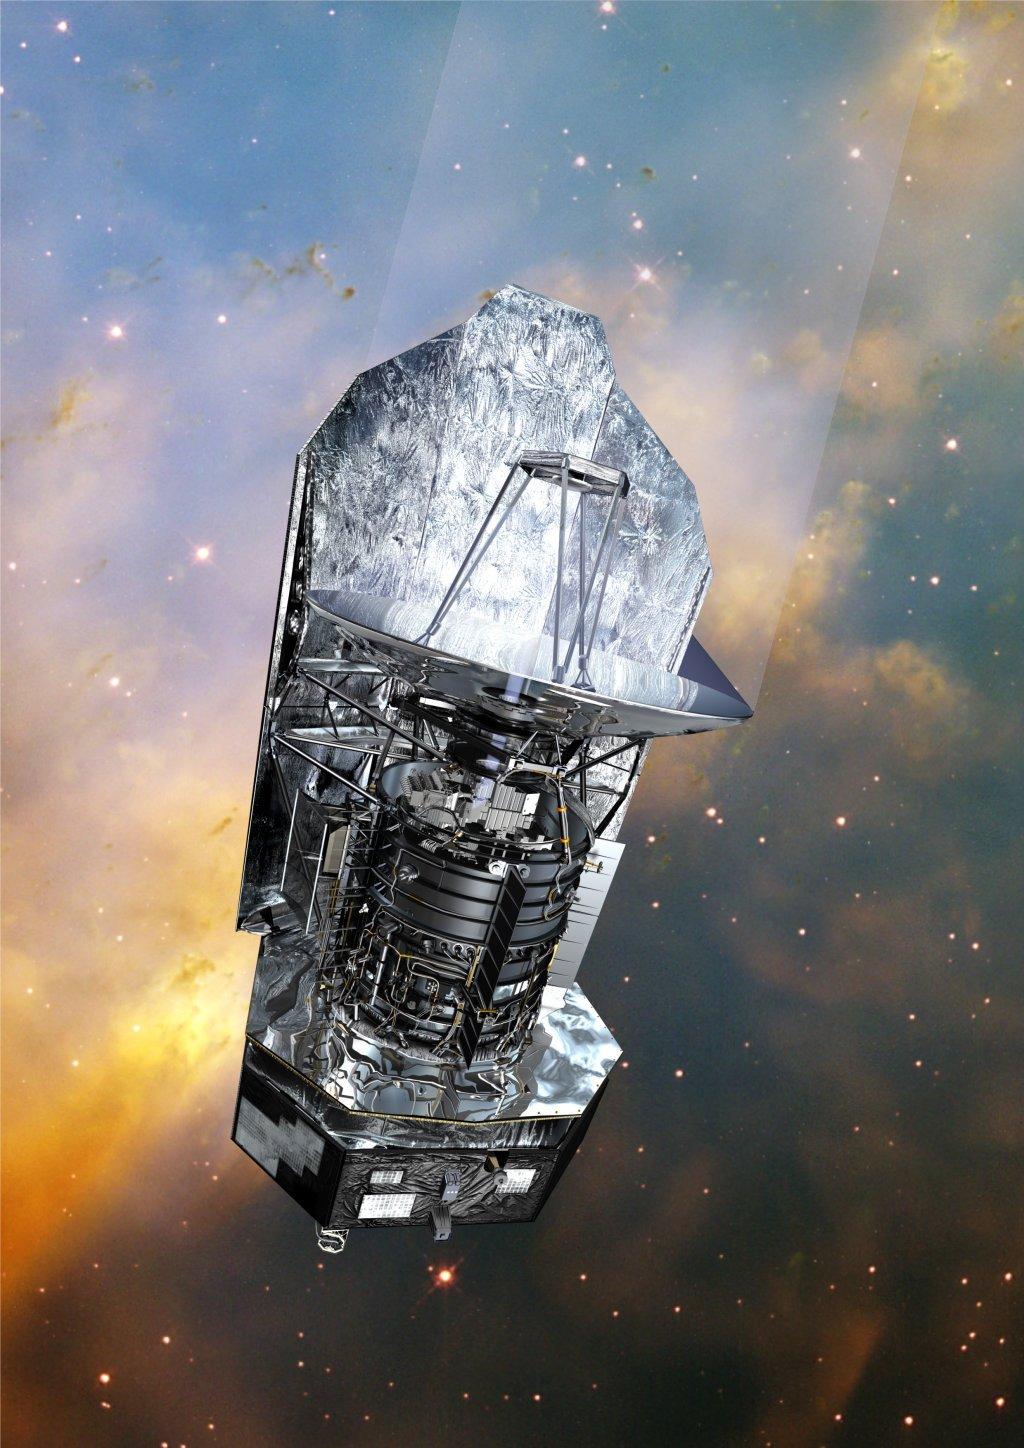 164 Samenvatting Figuur 2: Herschel Space Observatory. Credit European Space Agency (ESA).